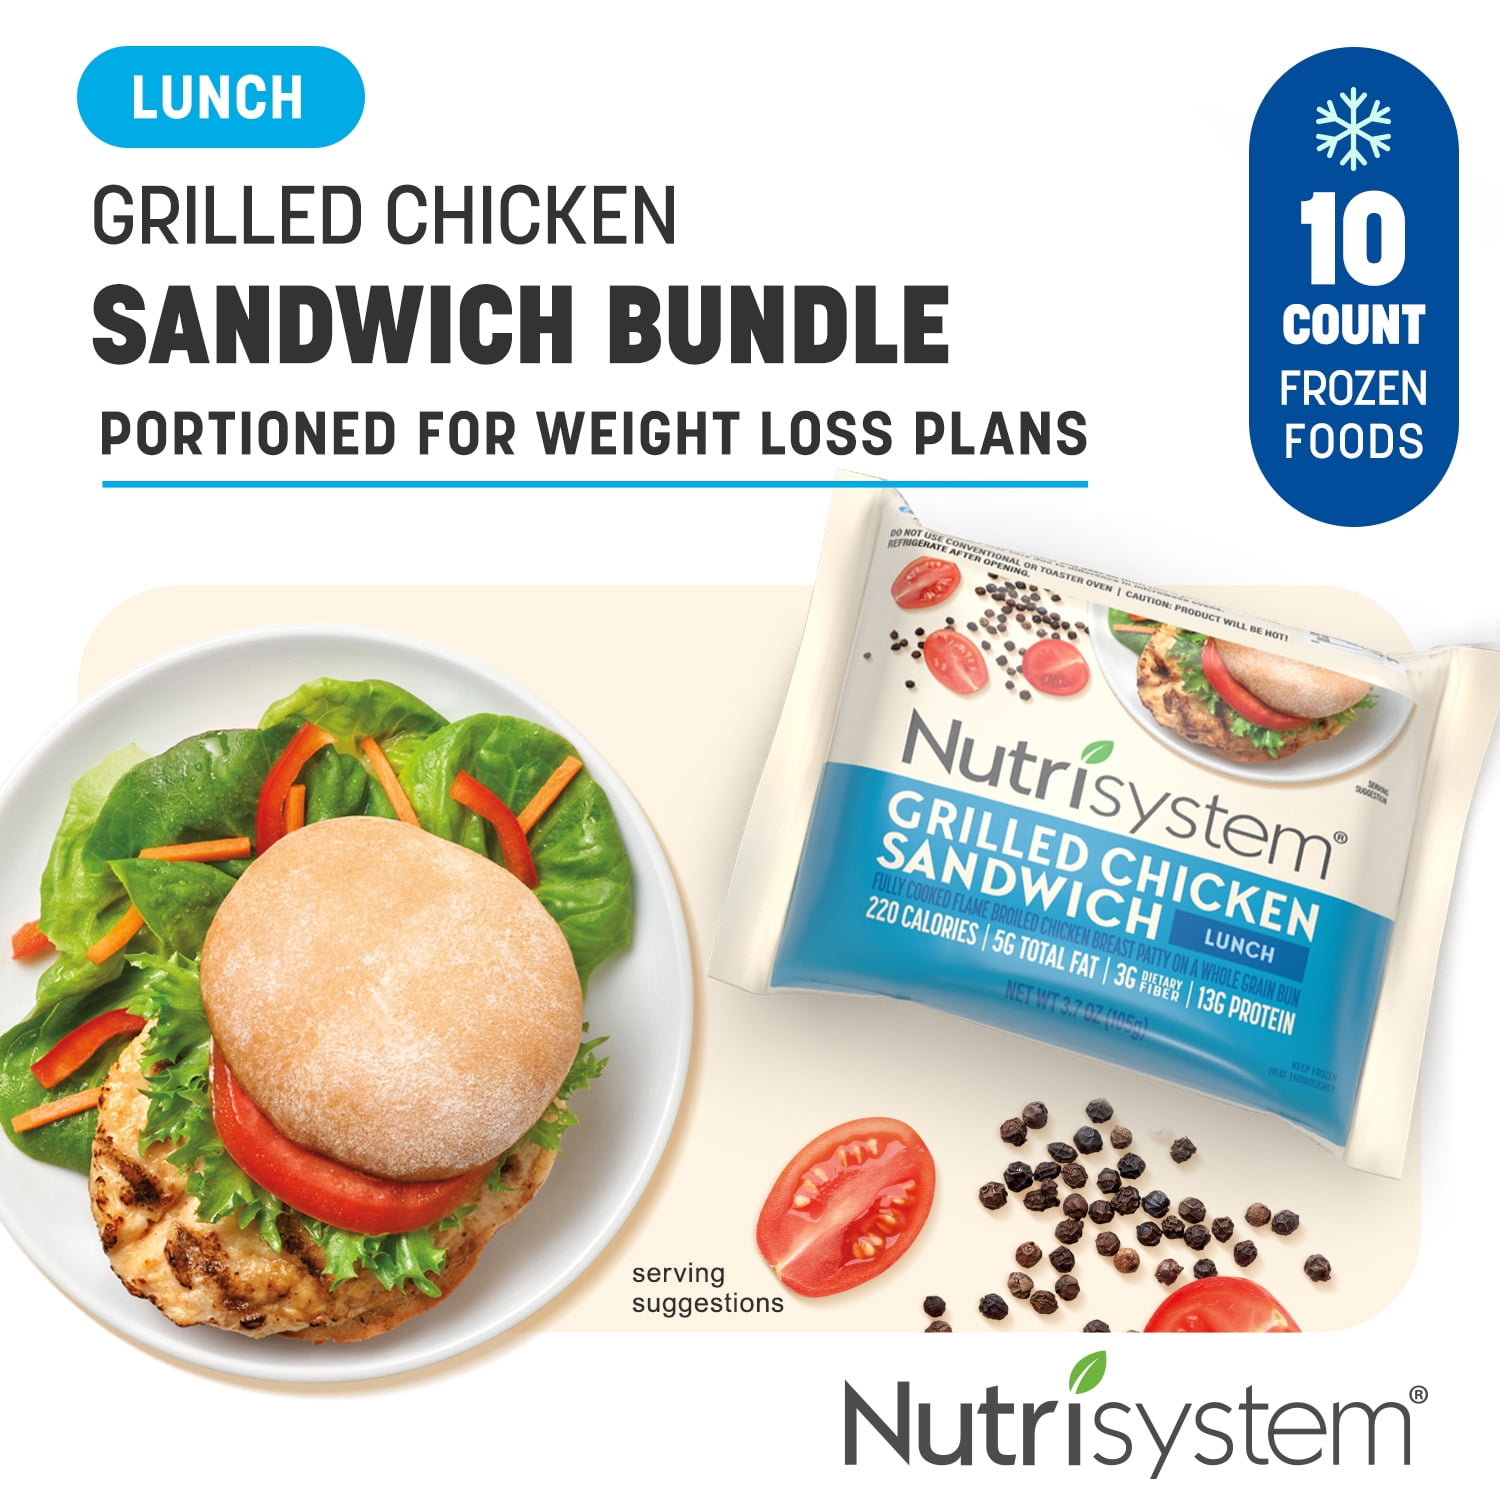 Nutrisystem® Grilled Chicken Sandwich, 10ct. Frozen ...